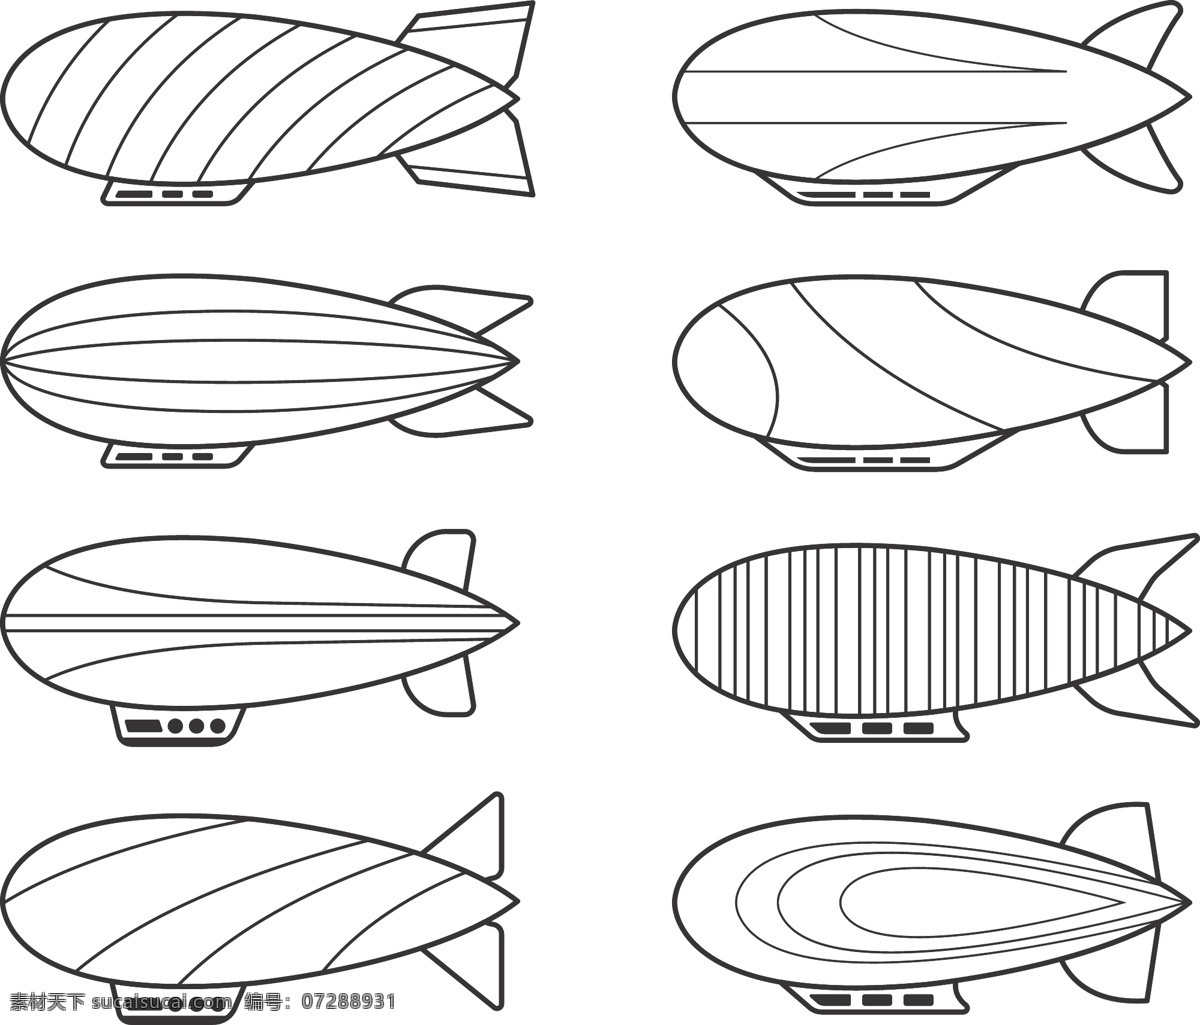 卡通 手绘 黑色 线描 空中 飞艇 飞艇元素 黑色线条 简洁线条 简约 交通工具 空中飞艇 空中交通工具